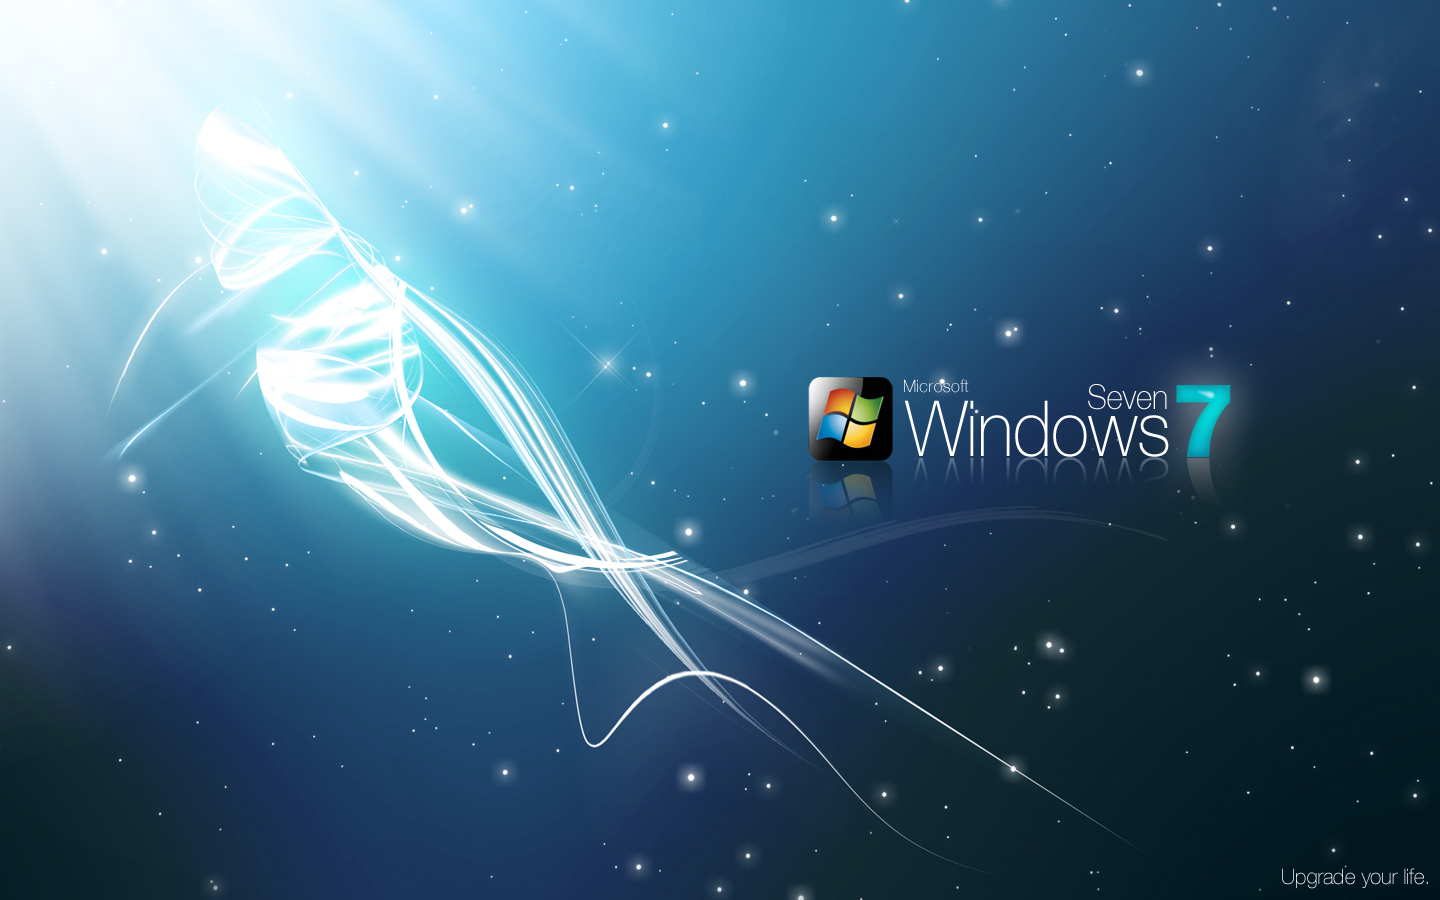 【windows 7 精美壁纸45 下载】_其他壁纸_壁纸_软件下载_新浪科技_新浪网